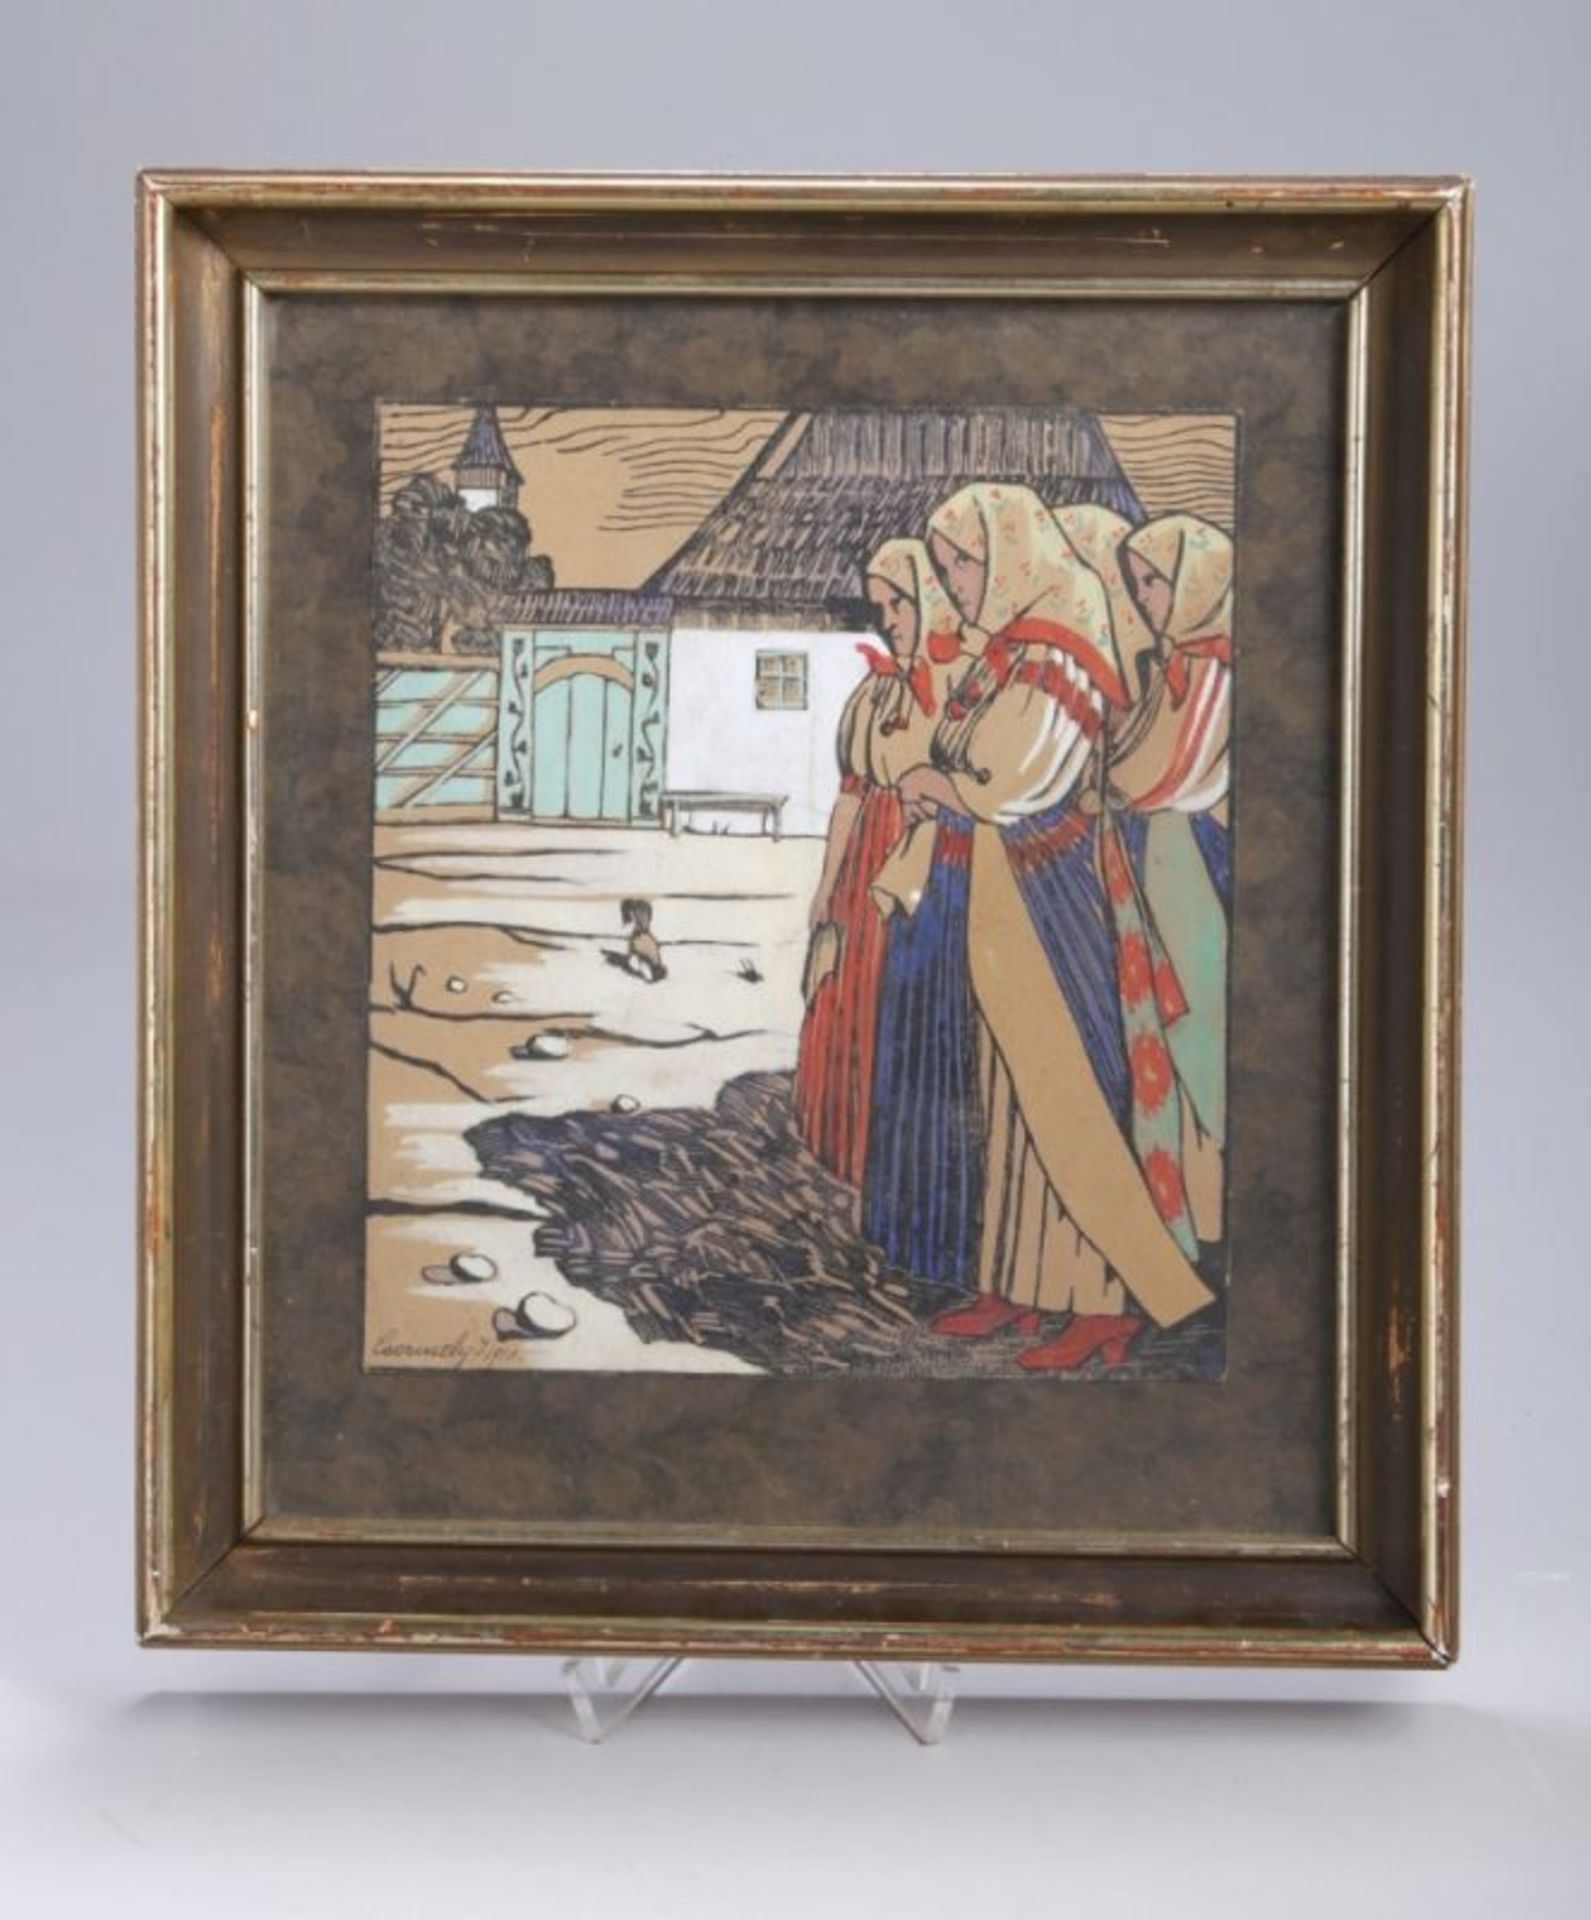 Csermely, Janos, ungarischer Maler 1883-1963. "Ungarische Bauersfrauen vor Gehöft",Holzschnitt,